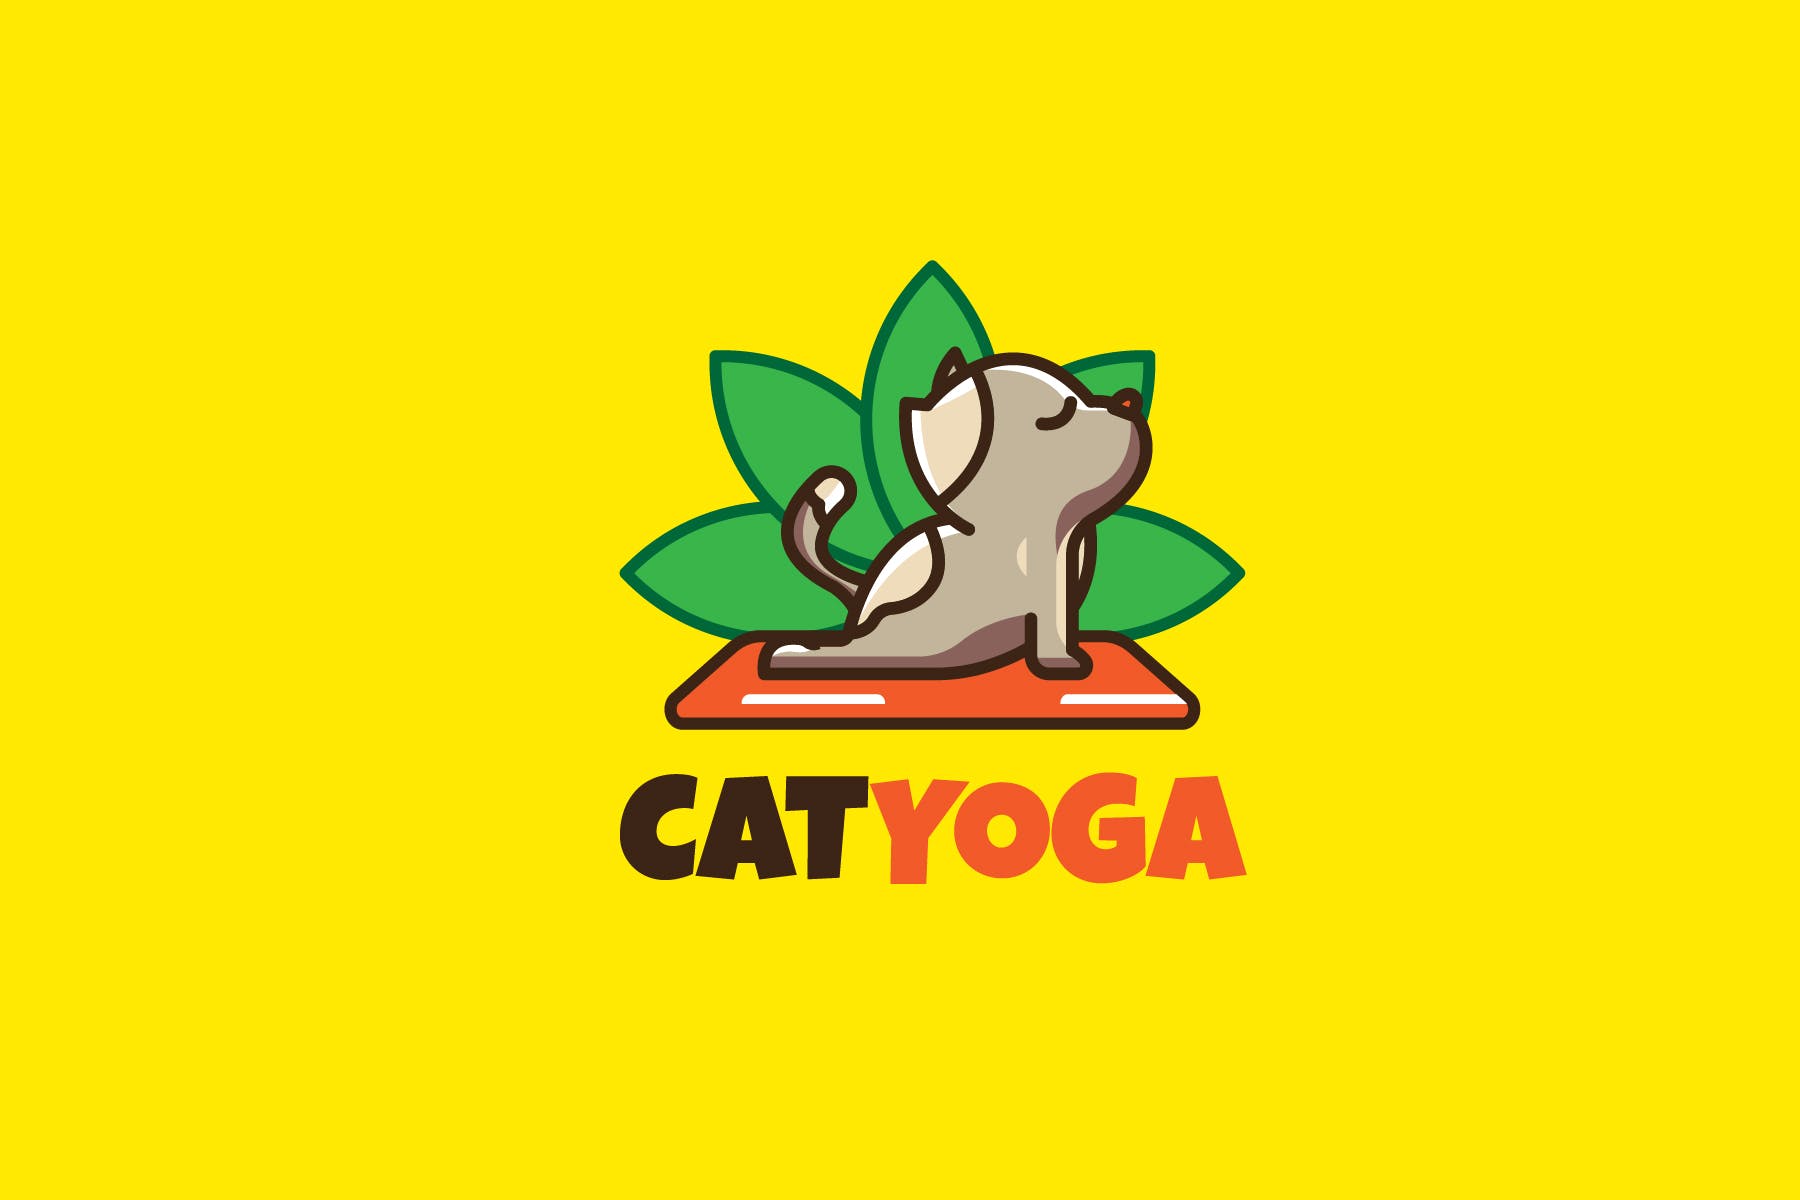 瑜伽猫咪卡通形象瑜伽品牌Logo设计素材库精选模板 CAT YOGA – Mascot & Esport Logo插图